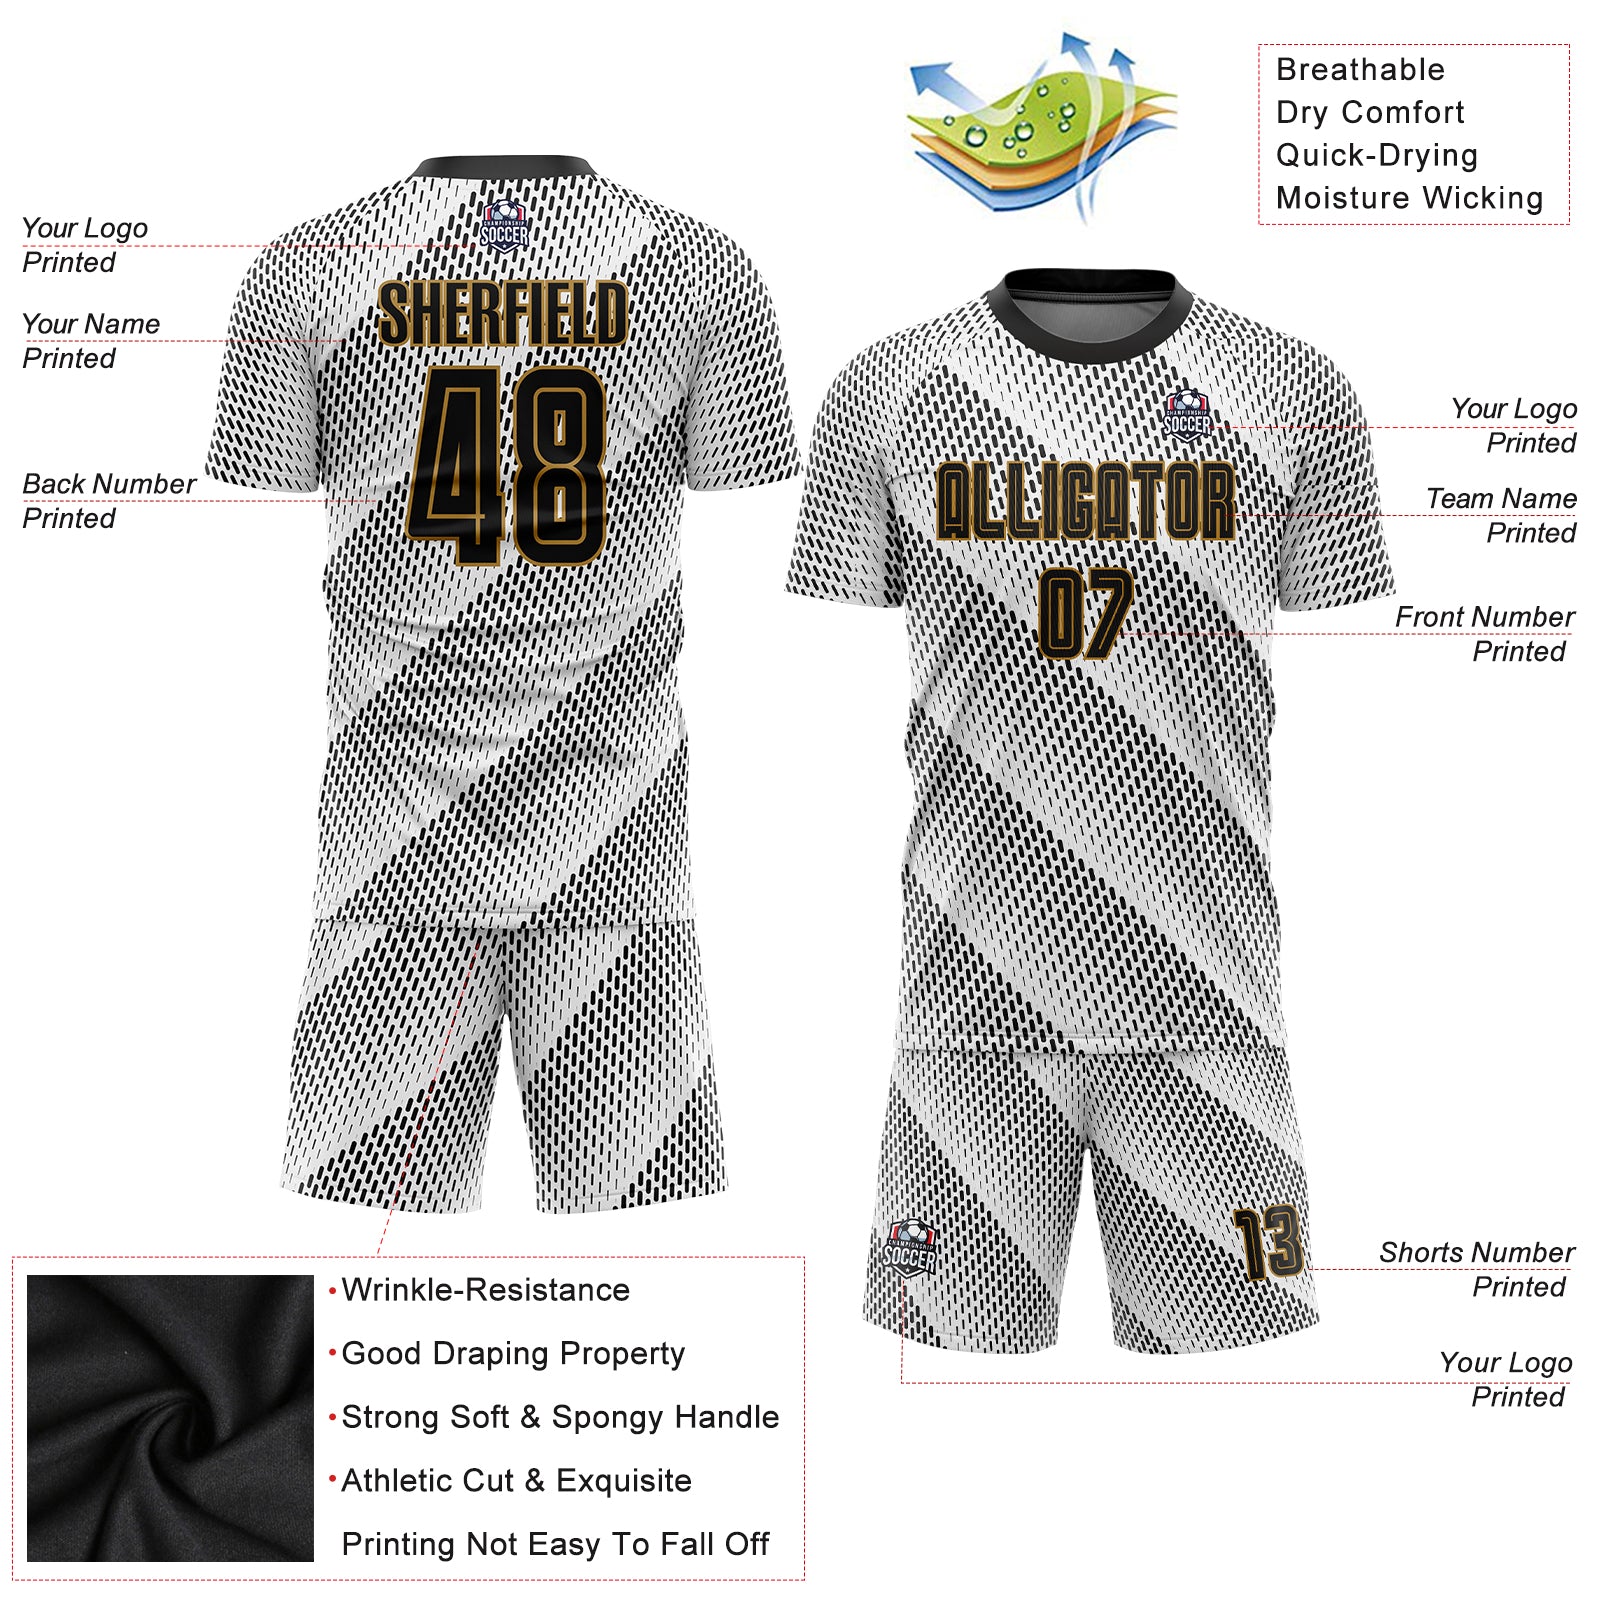 Custom Black Black-Old Gold Sublimation Soccer Uniform Jersey in